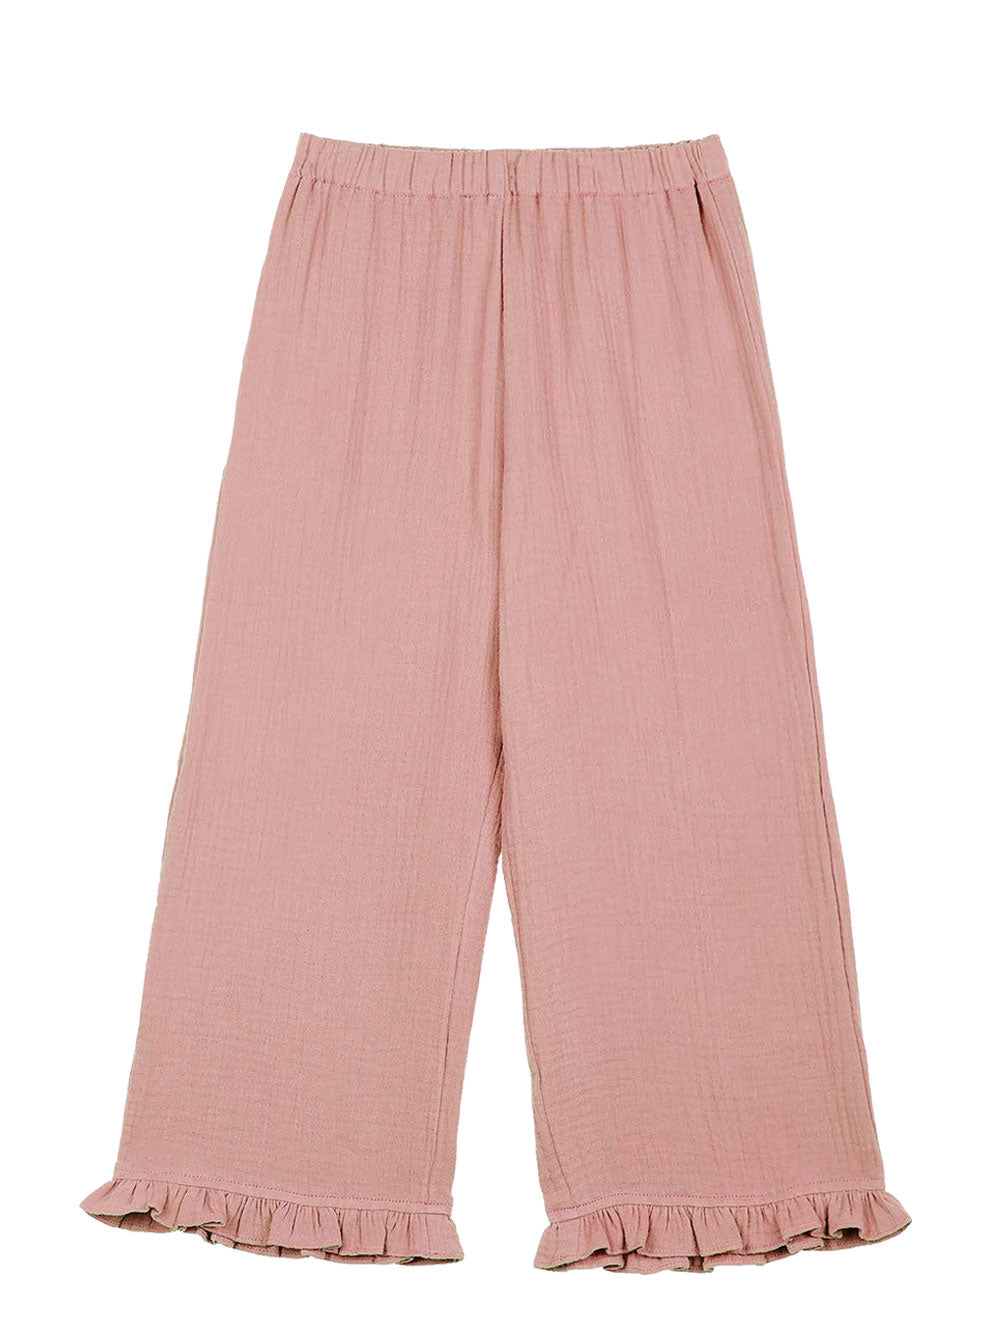 Elise Muslin Pink Pants